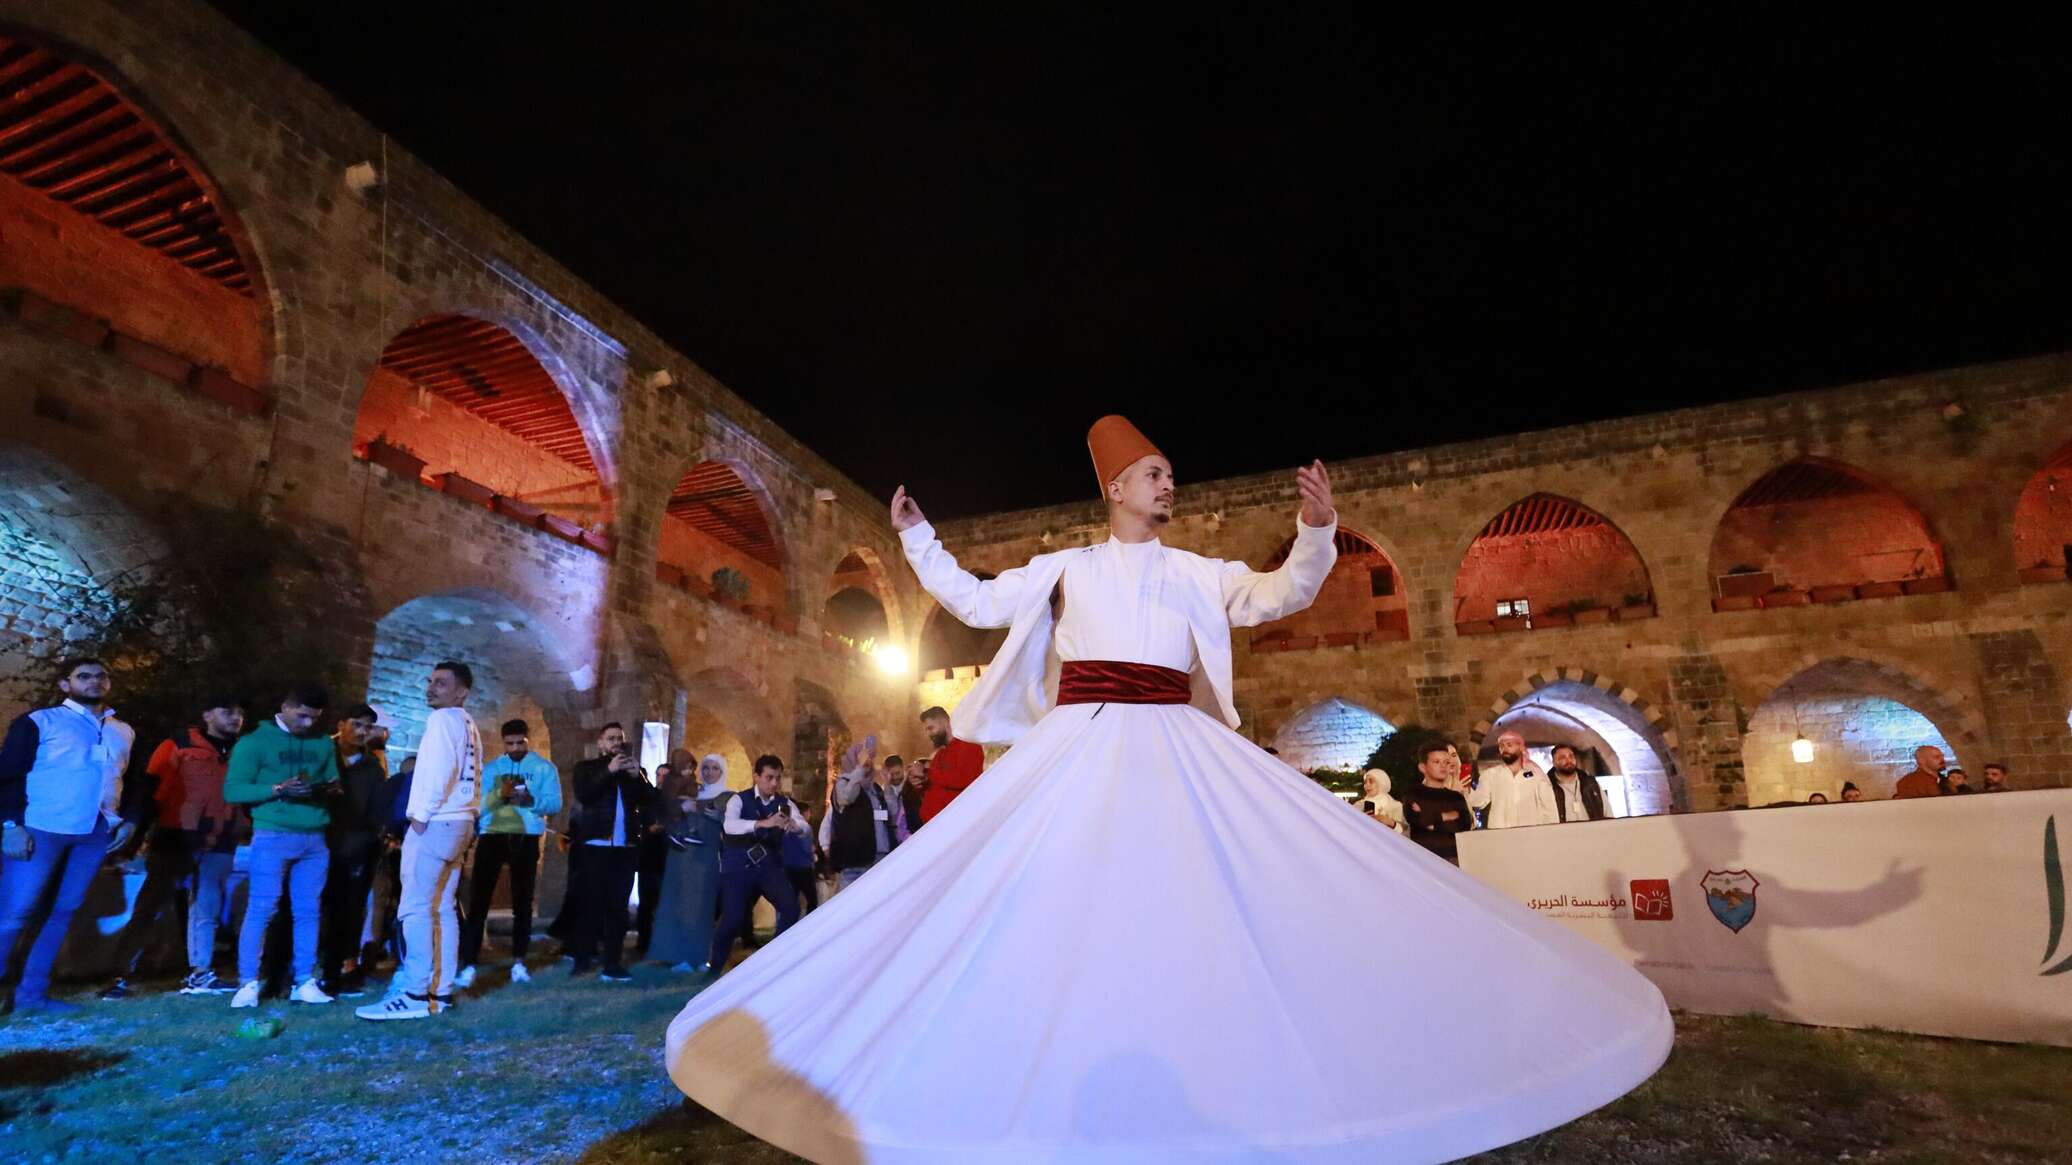 الرقصة المولوية الصوفية.. جمال روحاني خلال فعاليات "صيدا مدينة رمضانية"